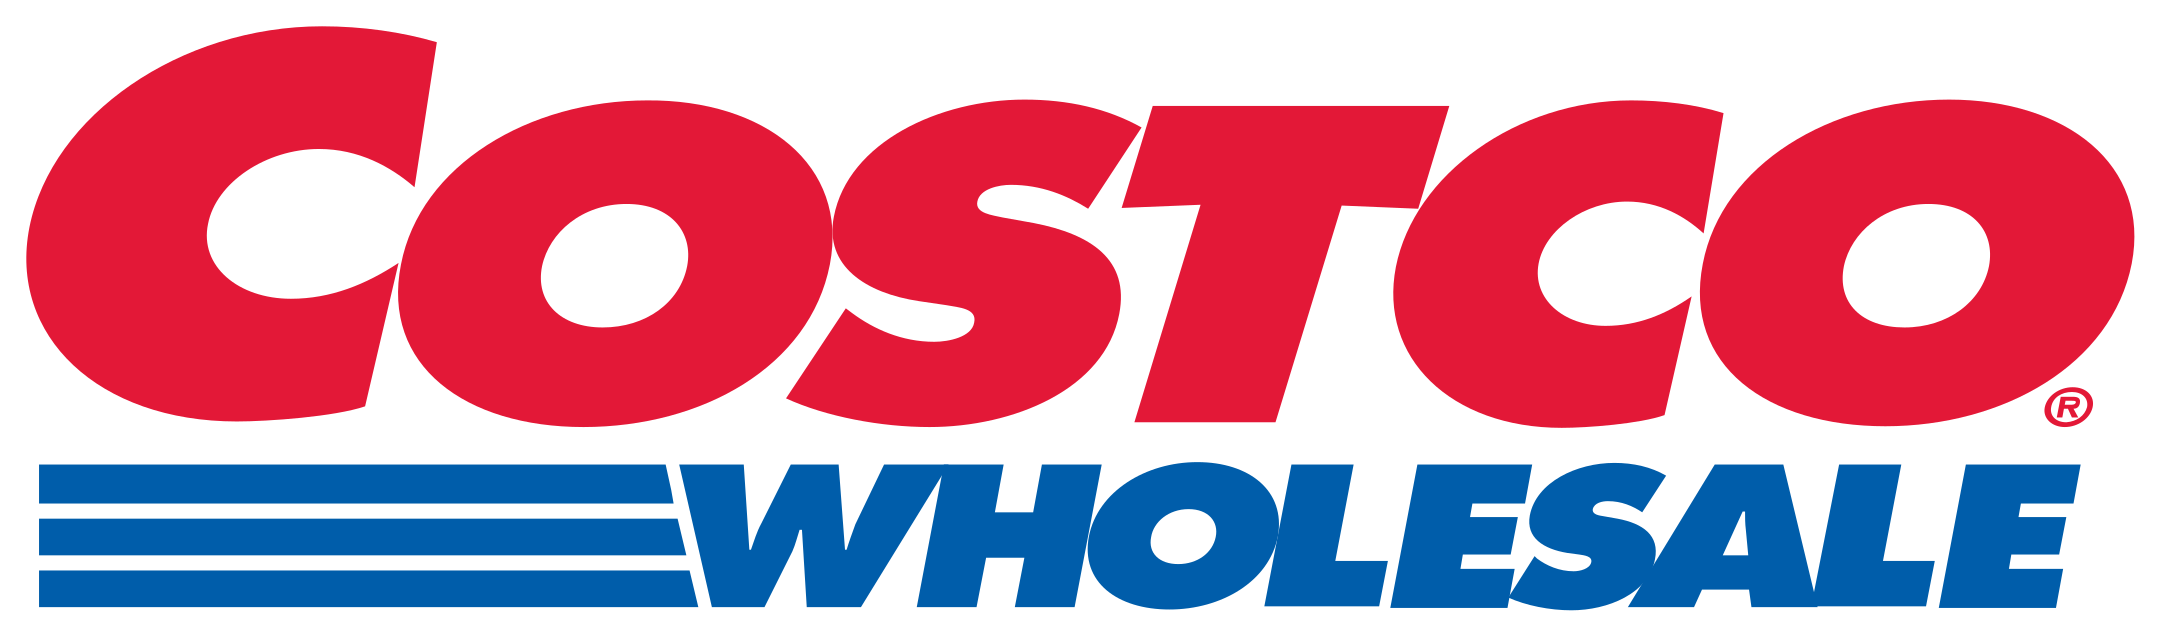 costco wholesale logo 1 - Costco Wholesale Logo